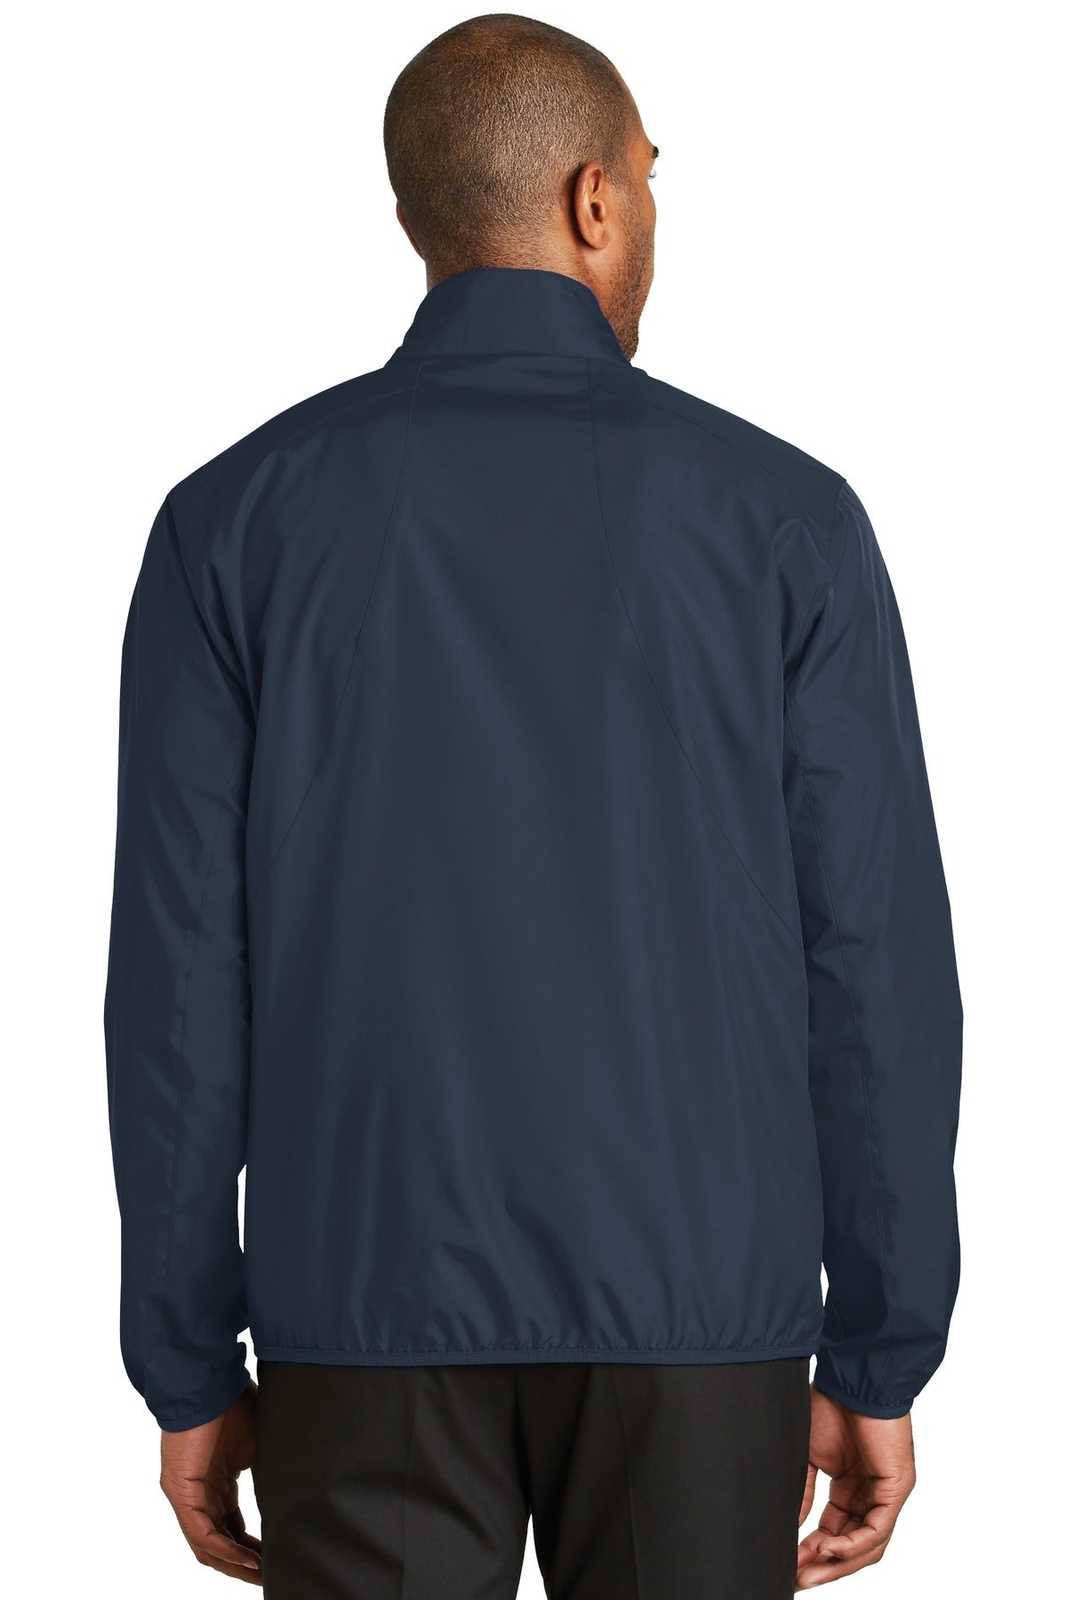 Port Authority J344 Zephyr Full-Zip Jacket - Dress Blue Navy - HIT a Double - 2